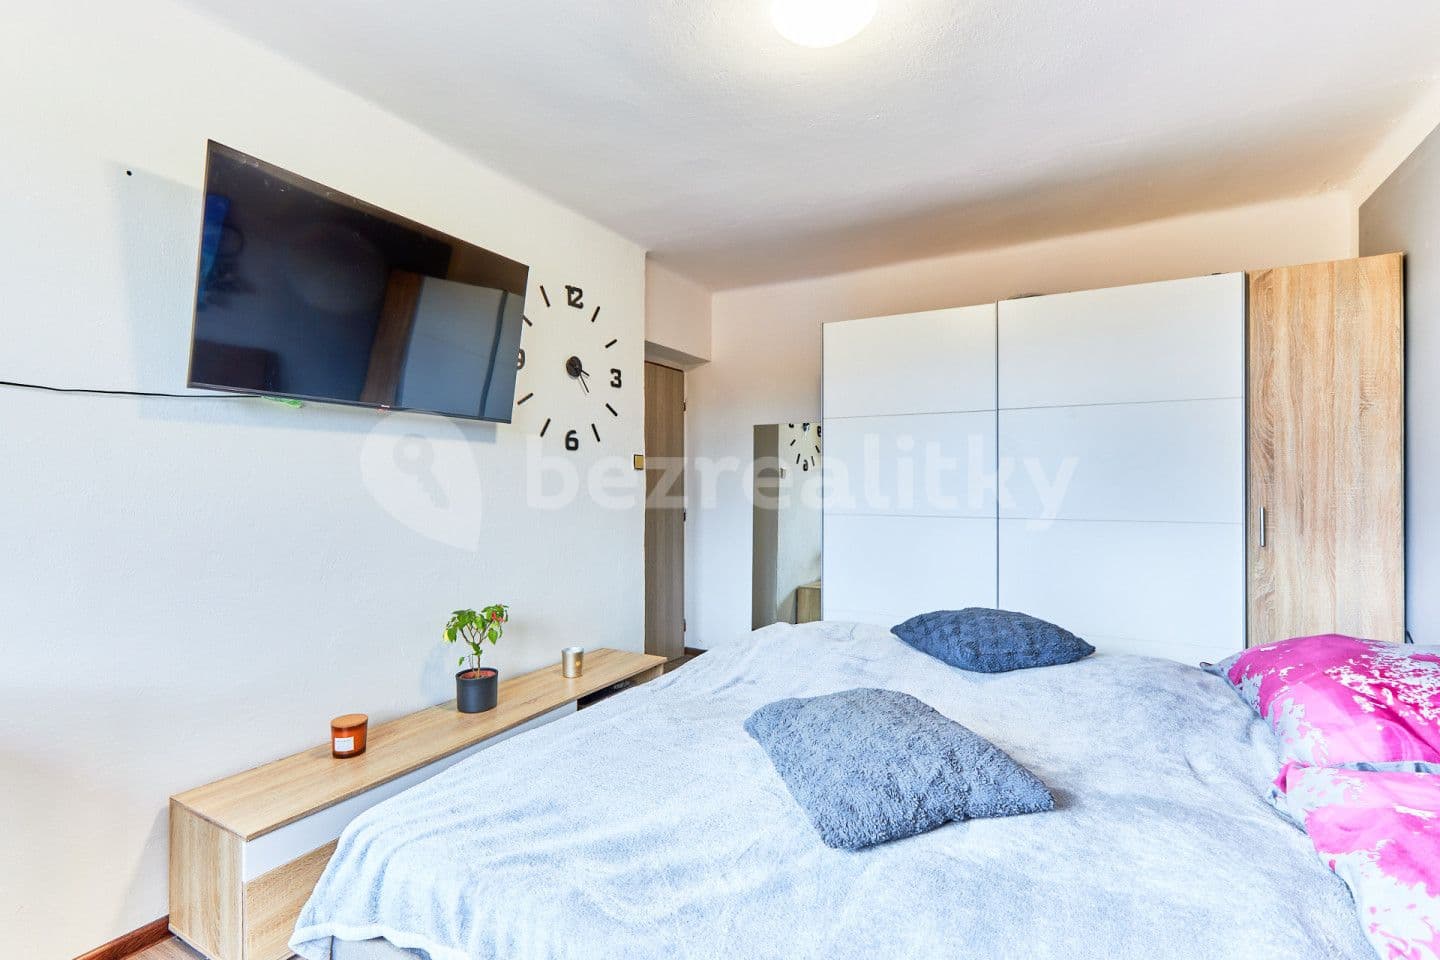 2 bedroom flat for sale, 58 m², Benešov nad Černou, Jihočeský Region